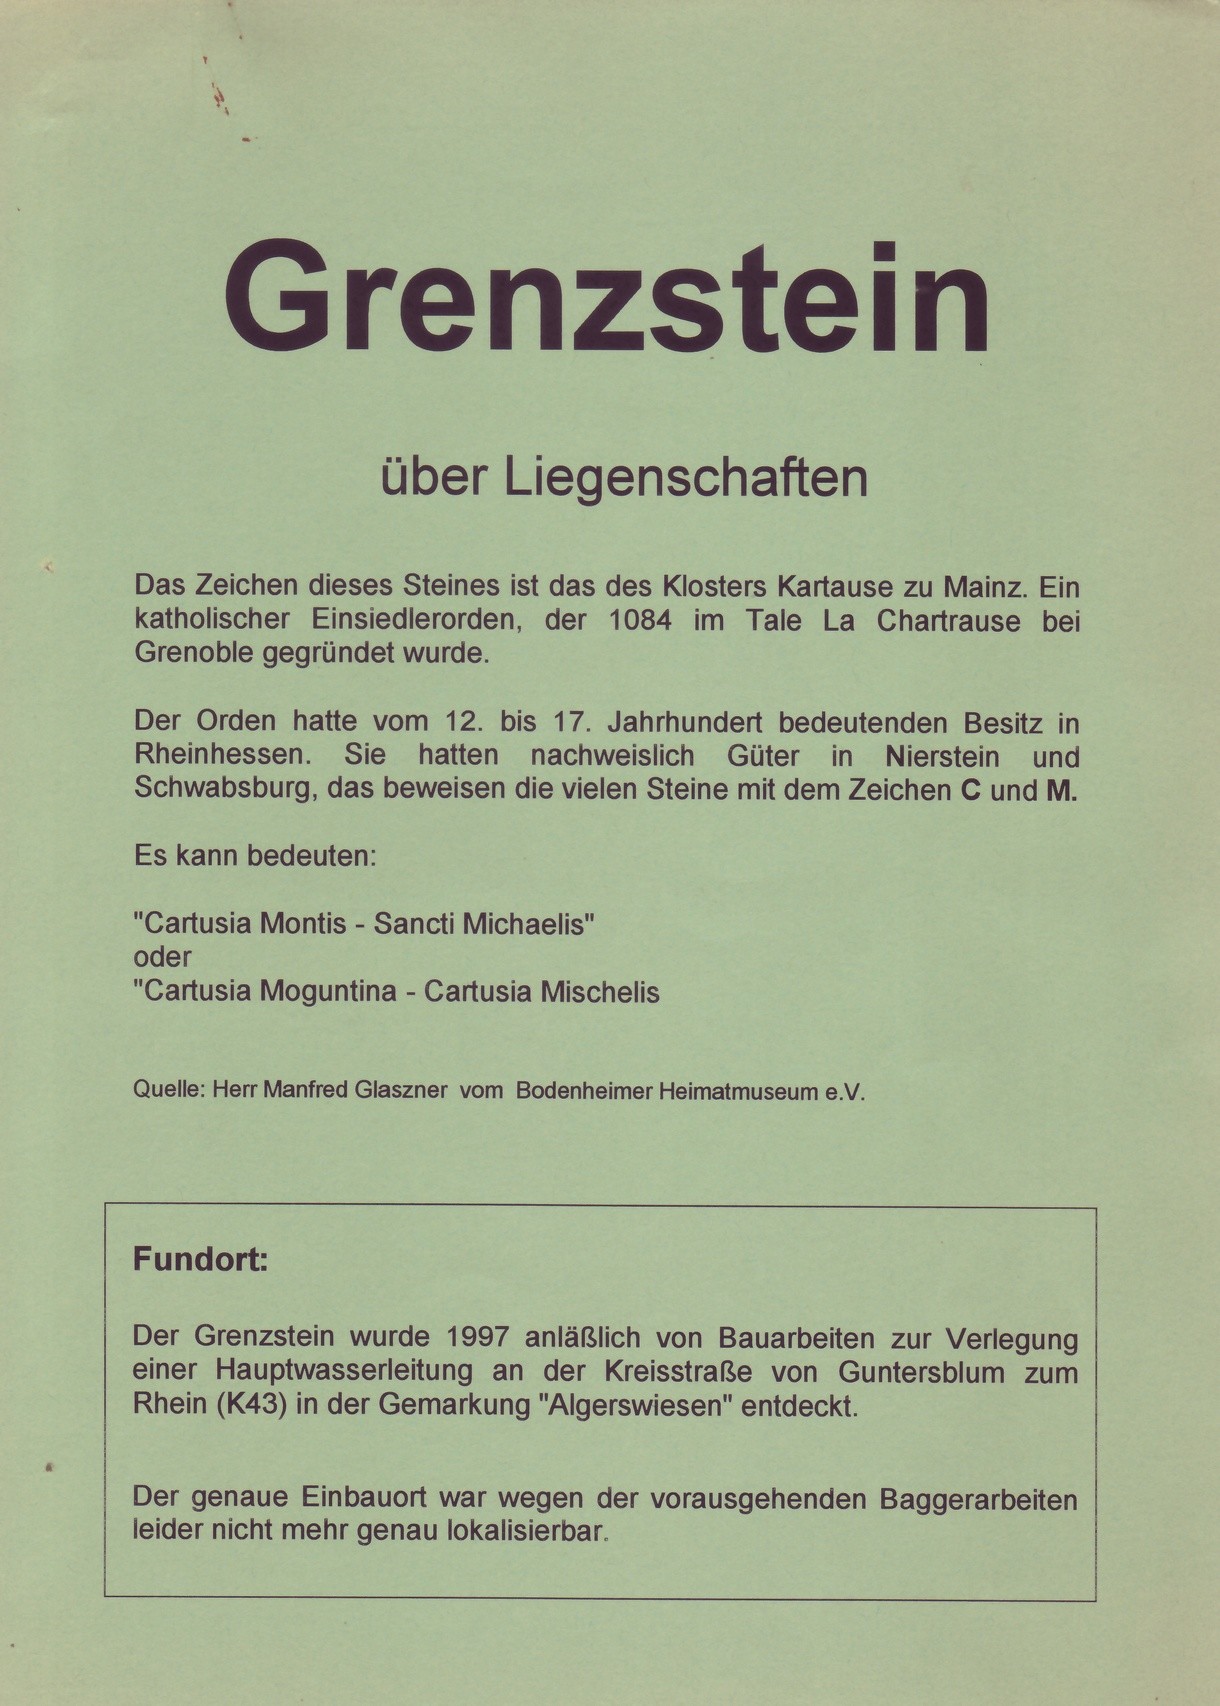 Grenzsteinfund in der Gemarkung Algerswiesen, Guntersblum (1997) (Kulturverein Guntersblum CC BY-NC-SA)